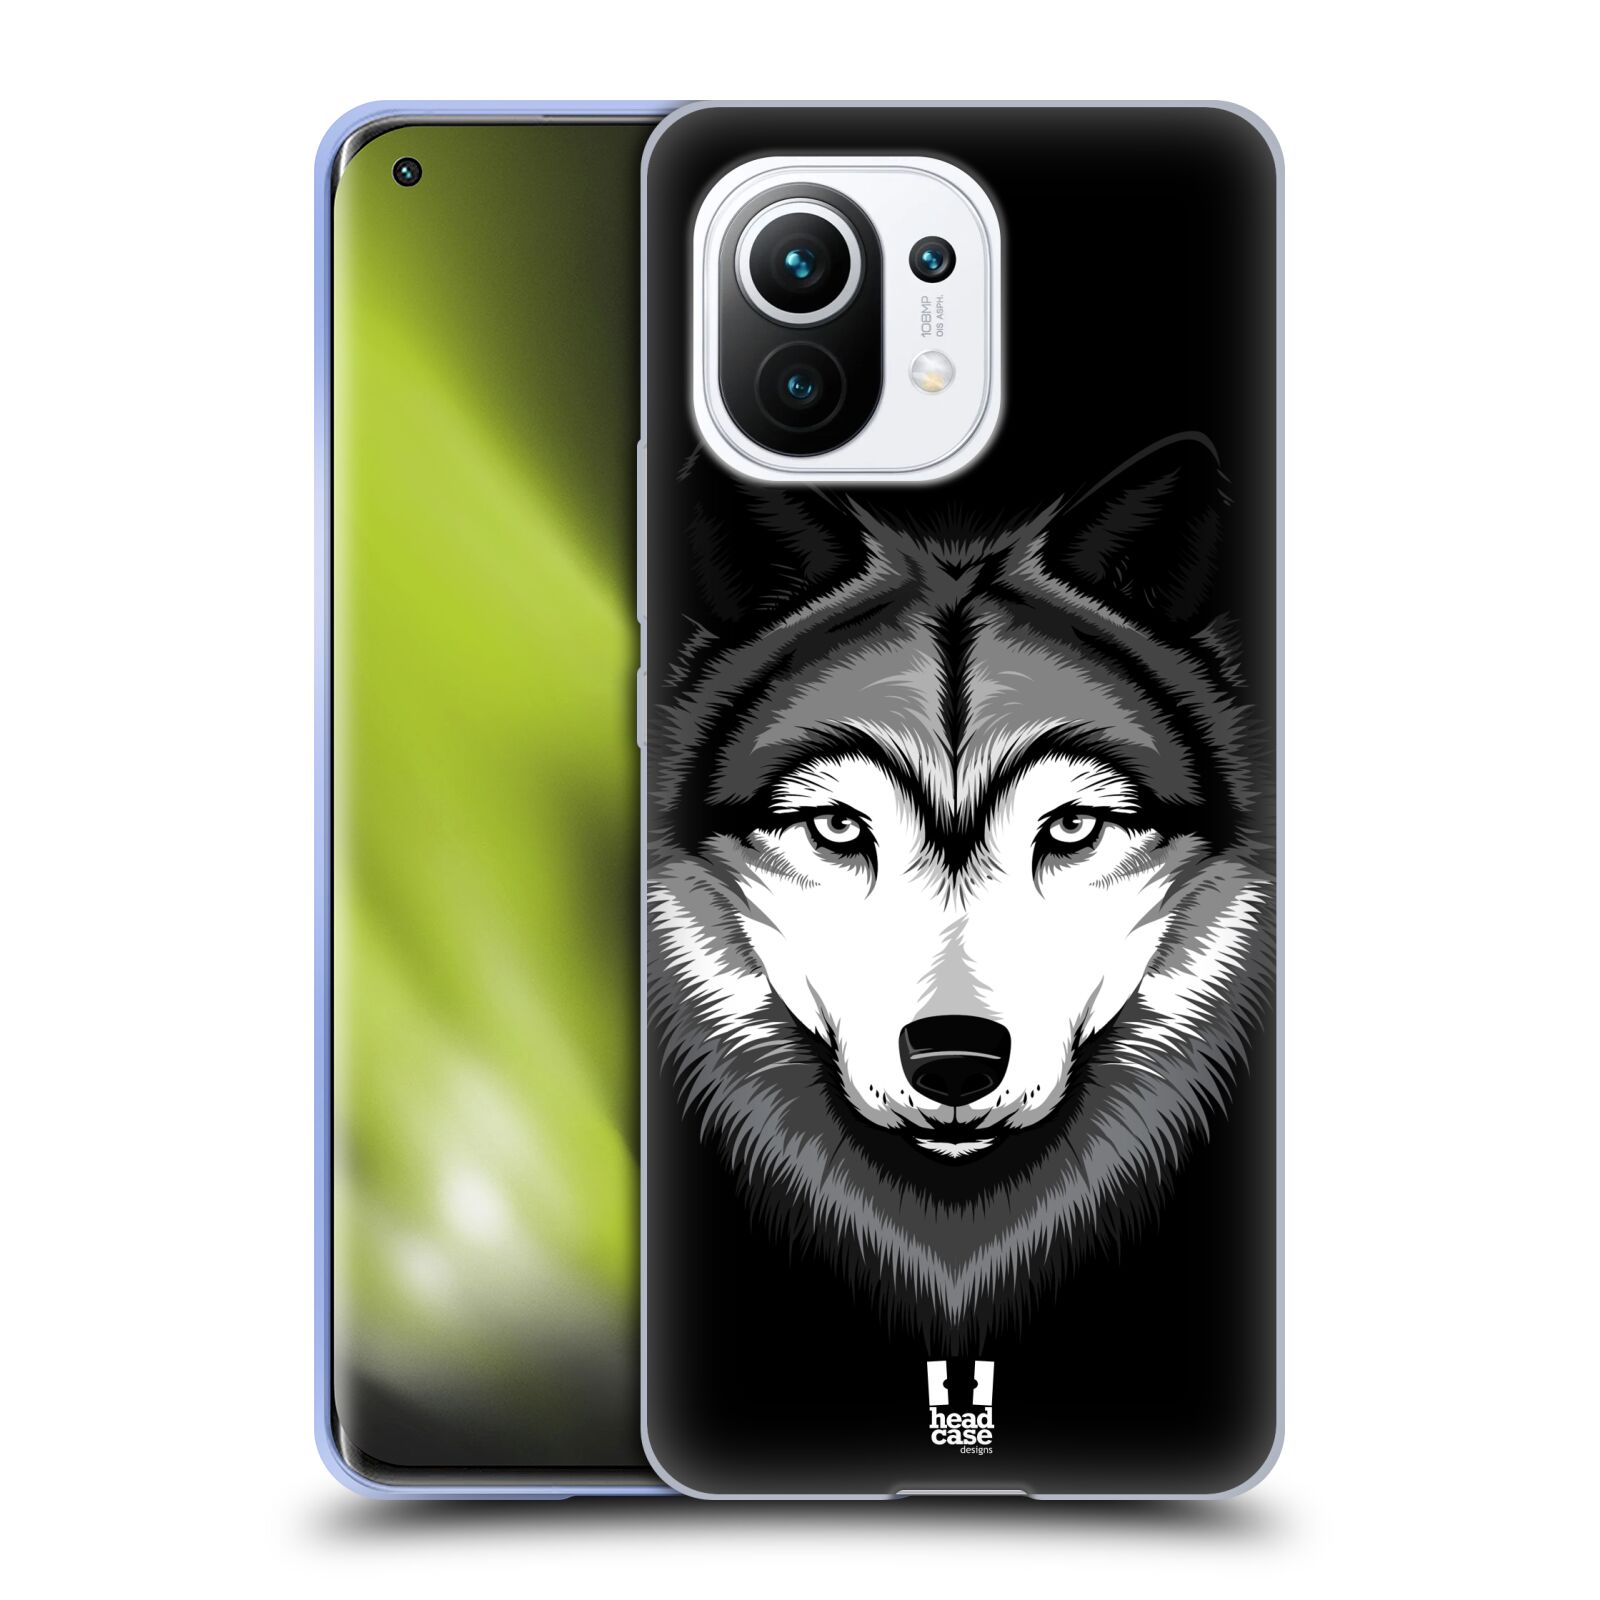 Plastový obal HEAD CASE na mobil Xiaomi Mi 11 vzor Zvíře kreslená tvář 2 vlk